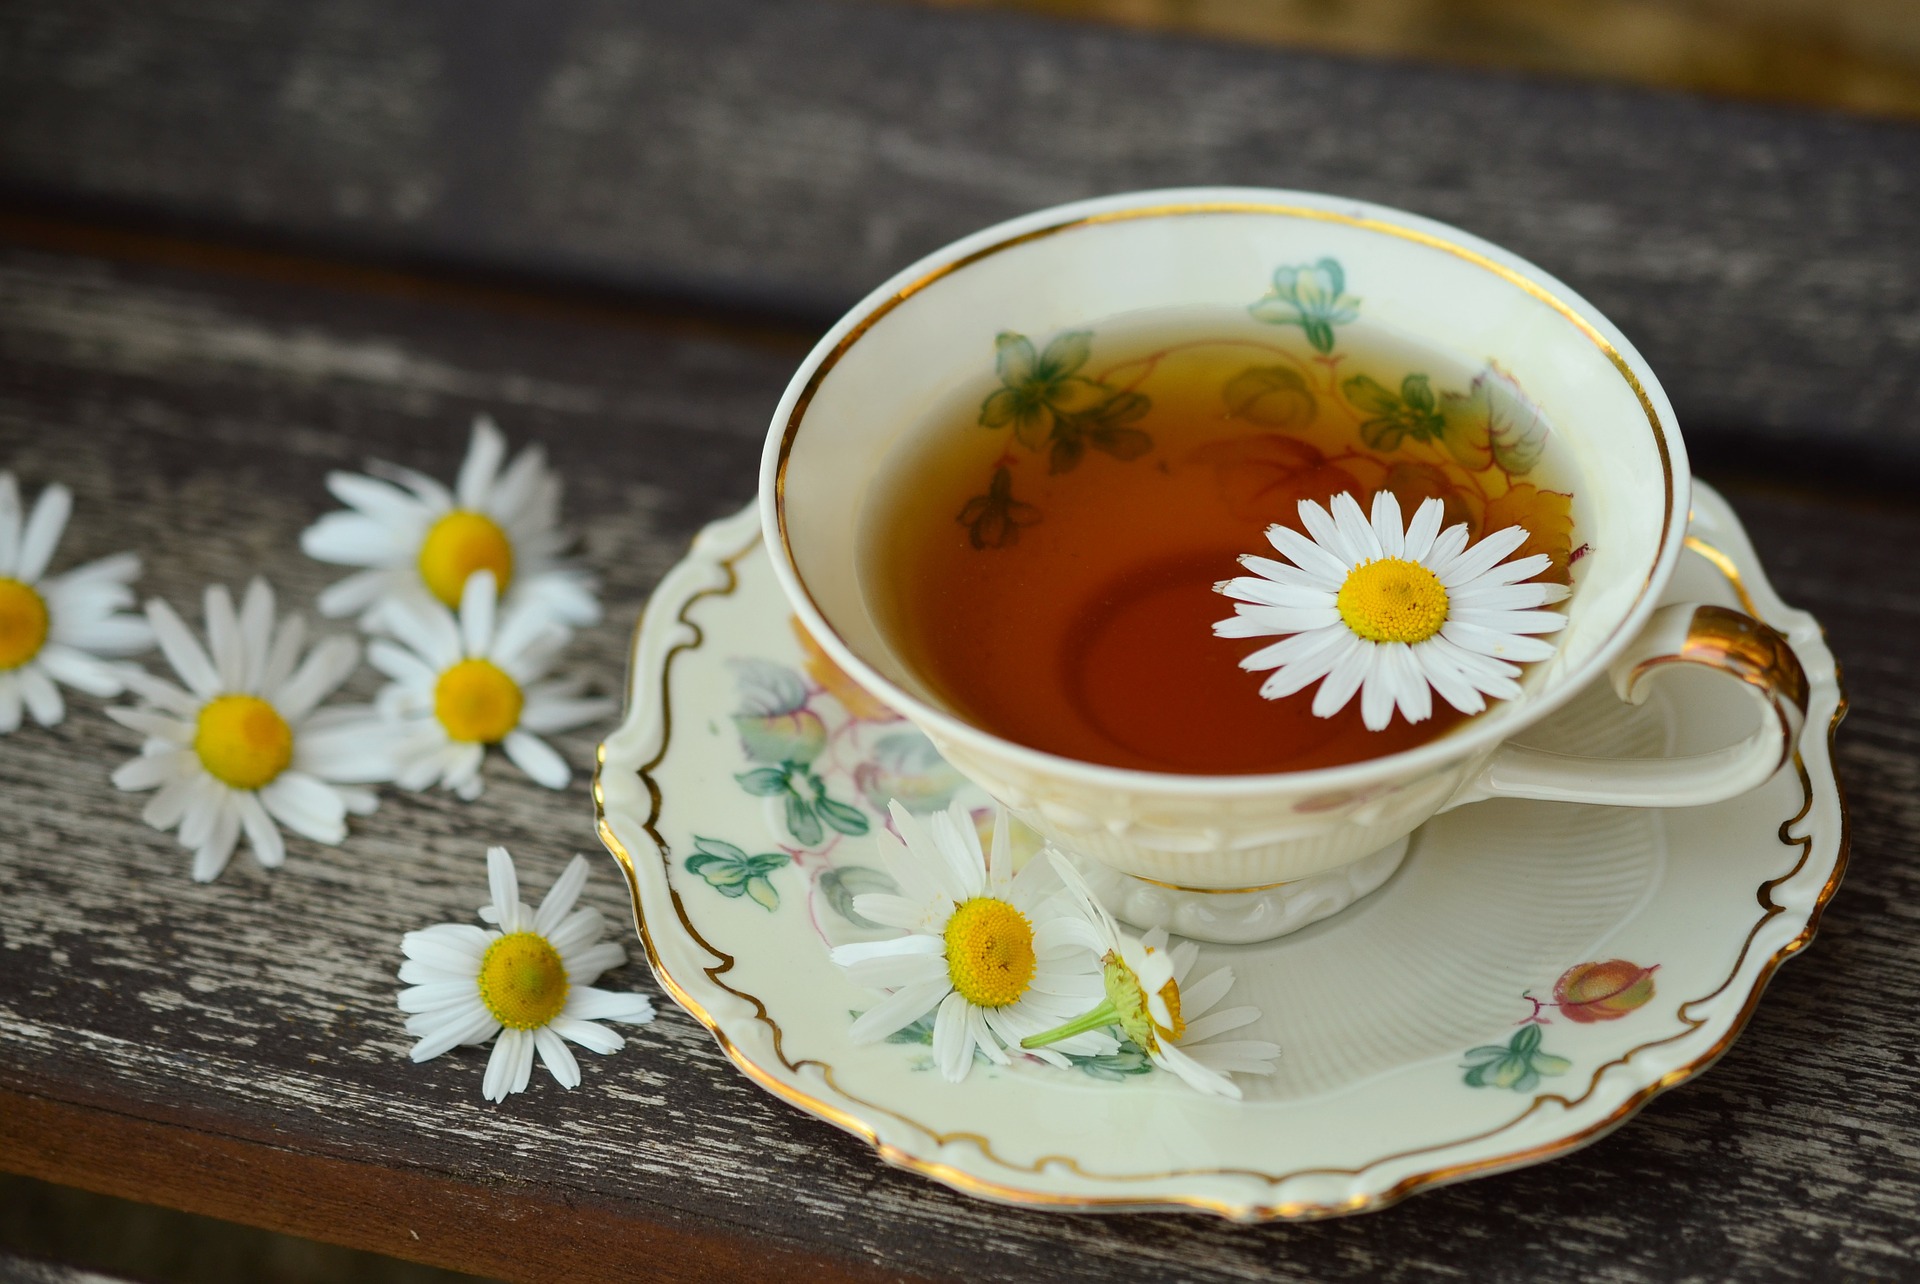 Faut-il privilégier le thé ou les infusions ? On vous explique tout !